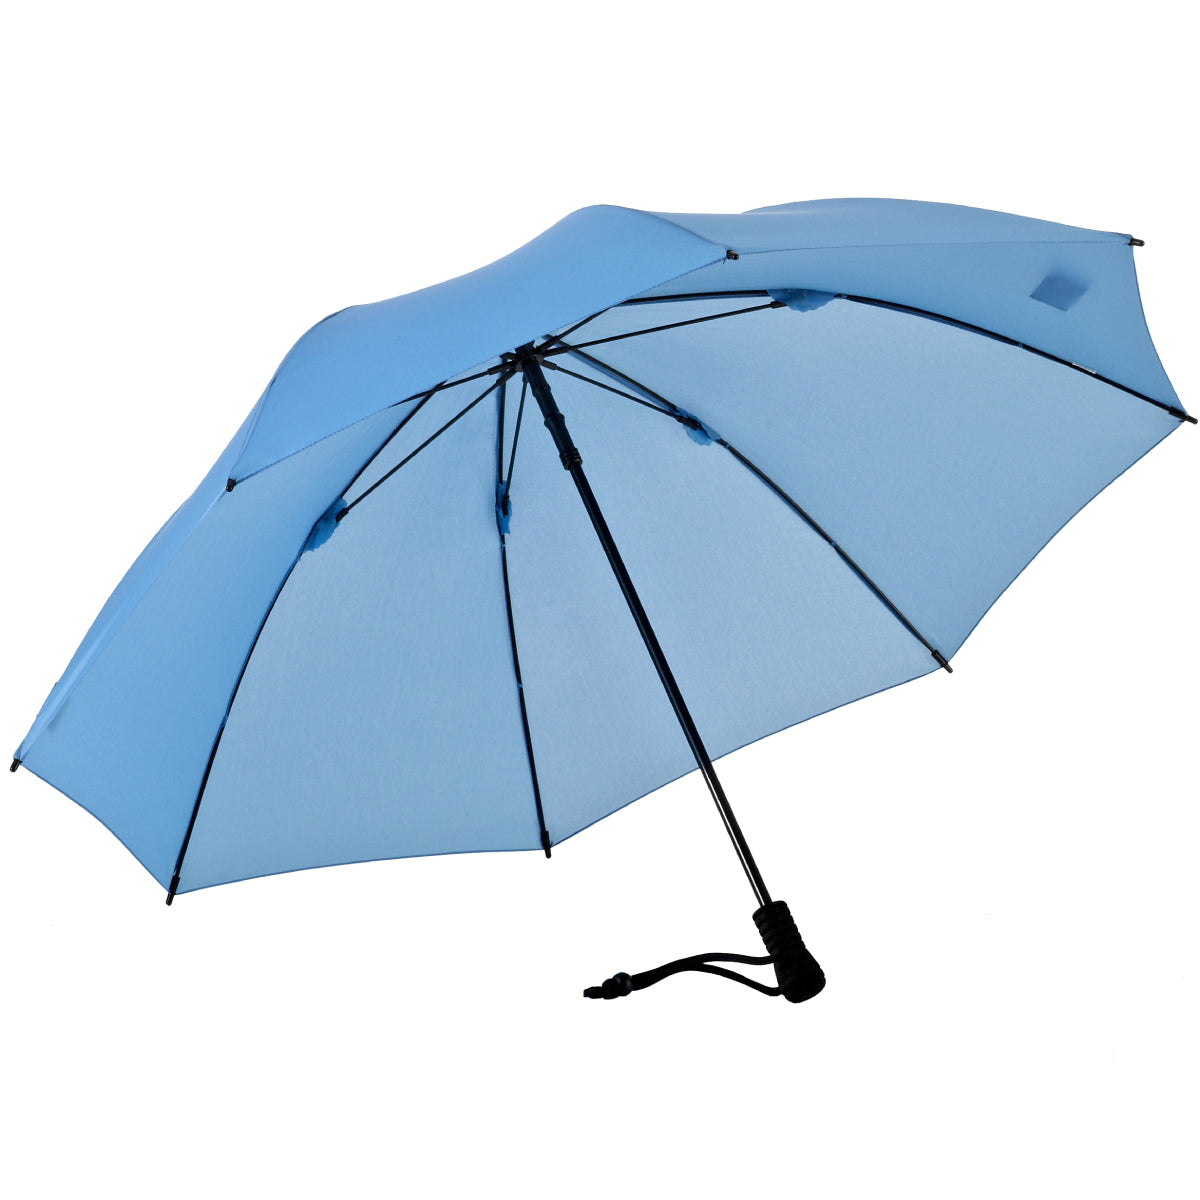 Umbrella USA Swing Liteflex EuroSCHIRM – EuroSCHIRM